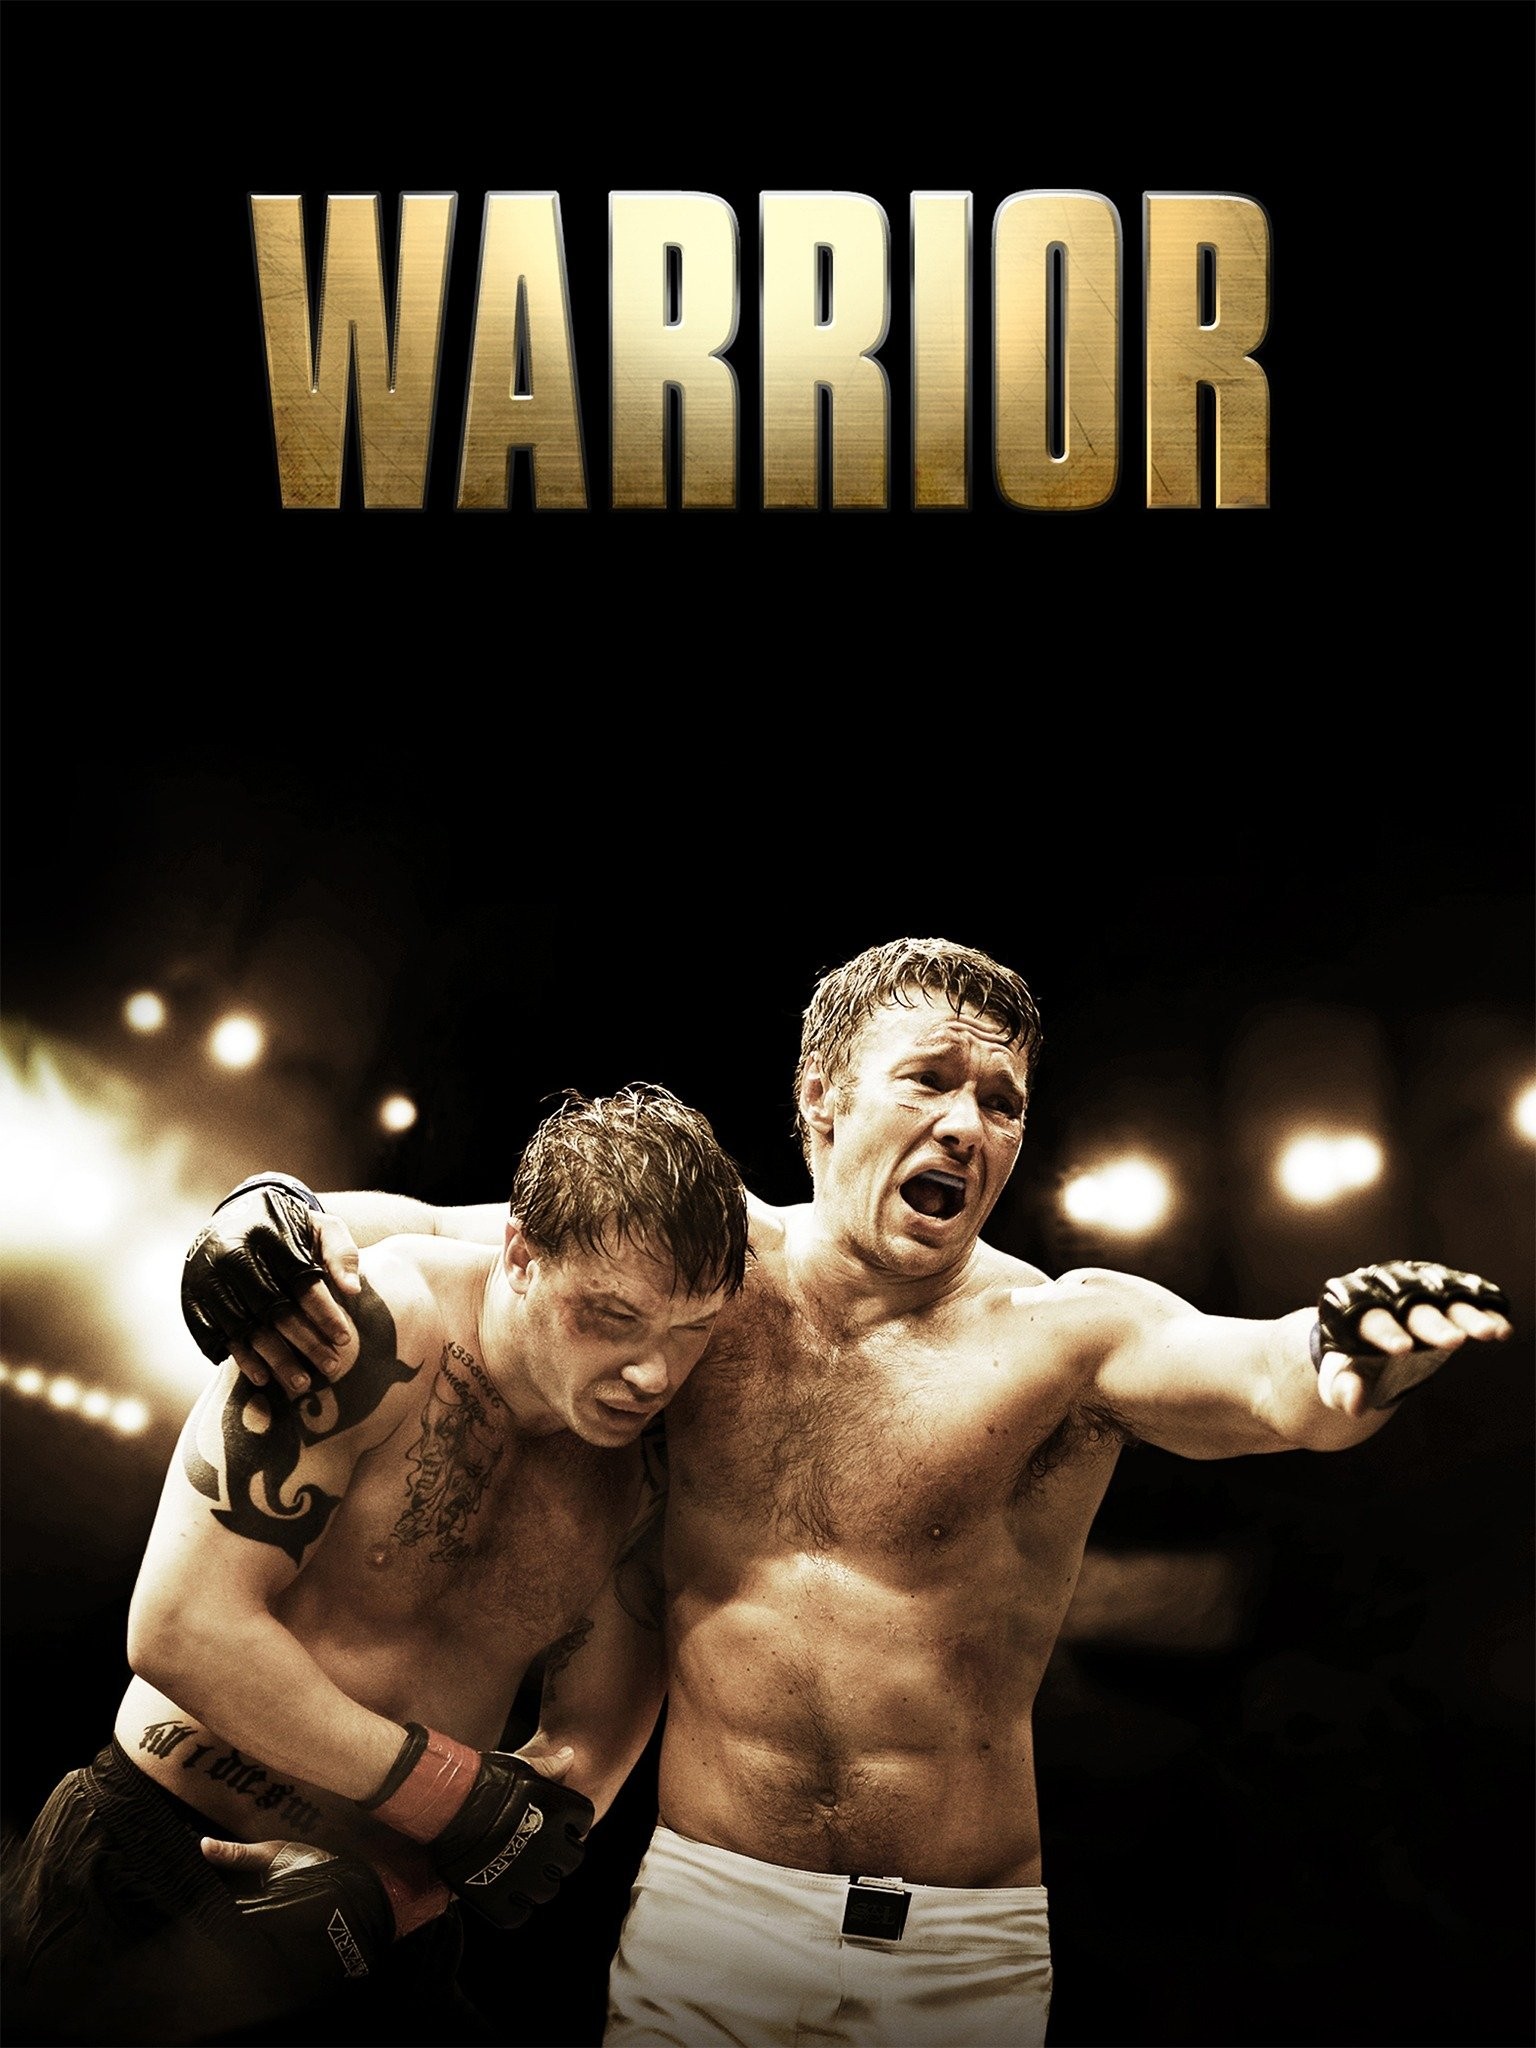 Warrior Season 4 Release Date, Trailer, Cast